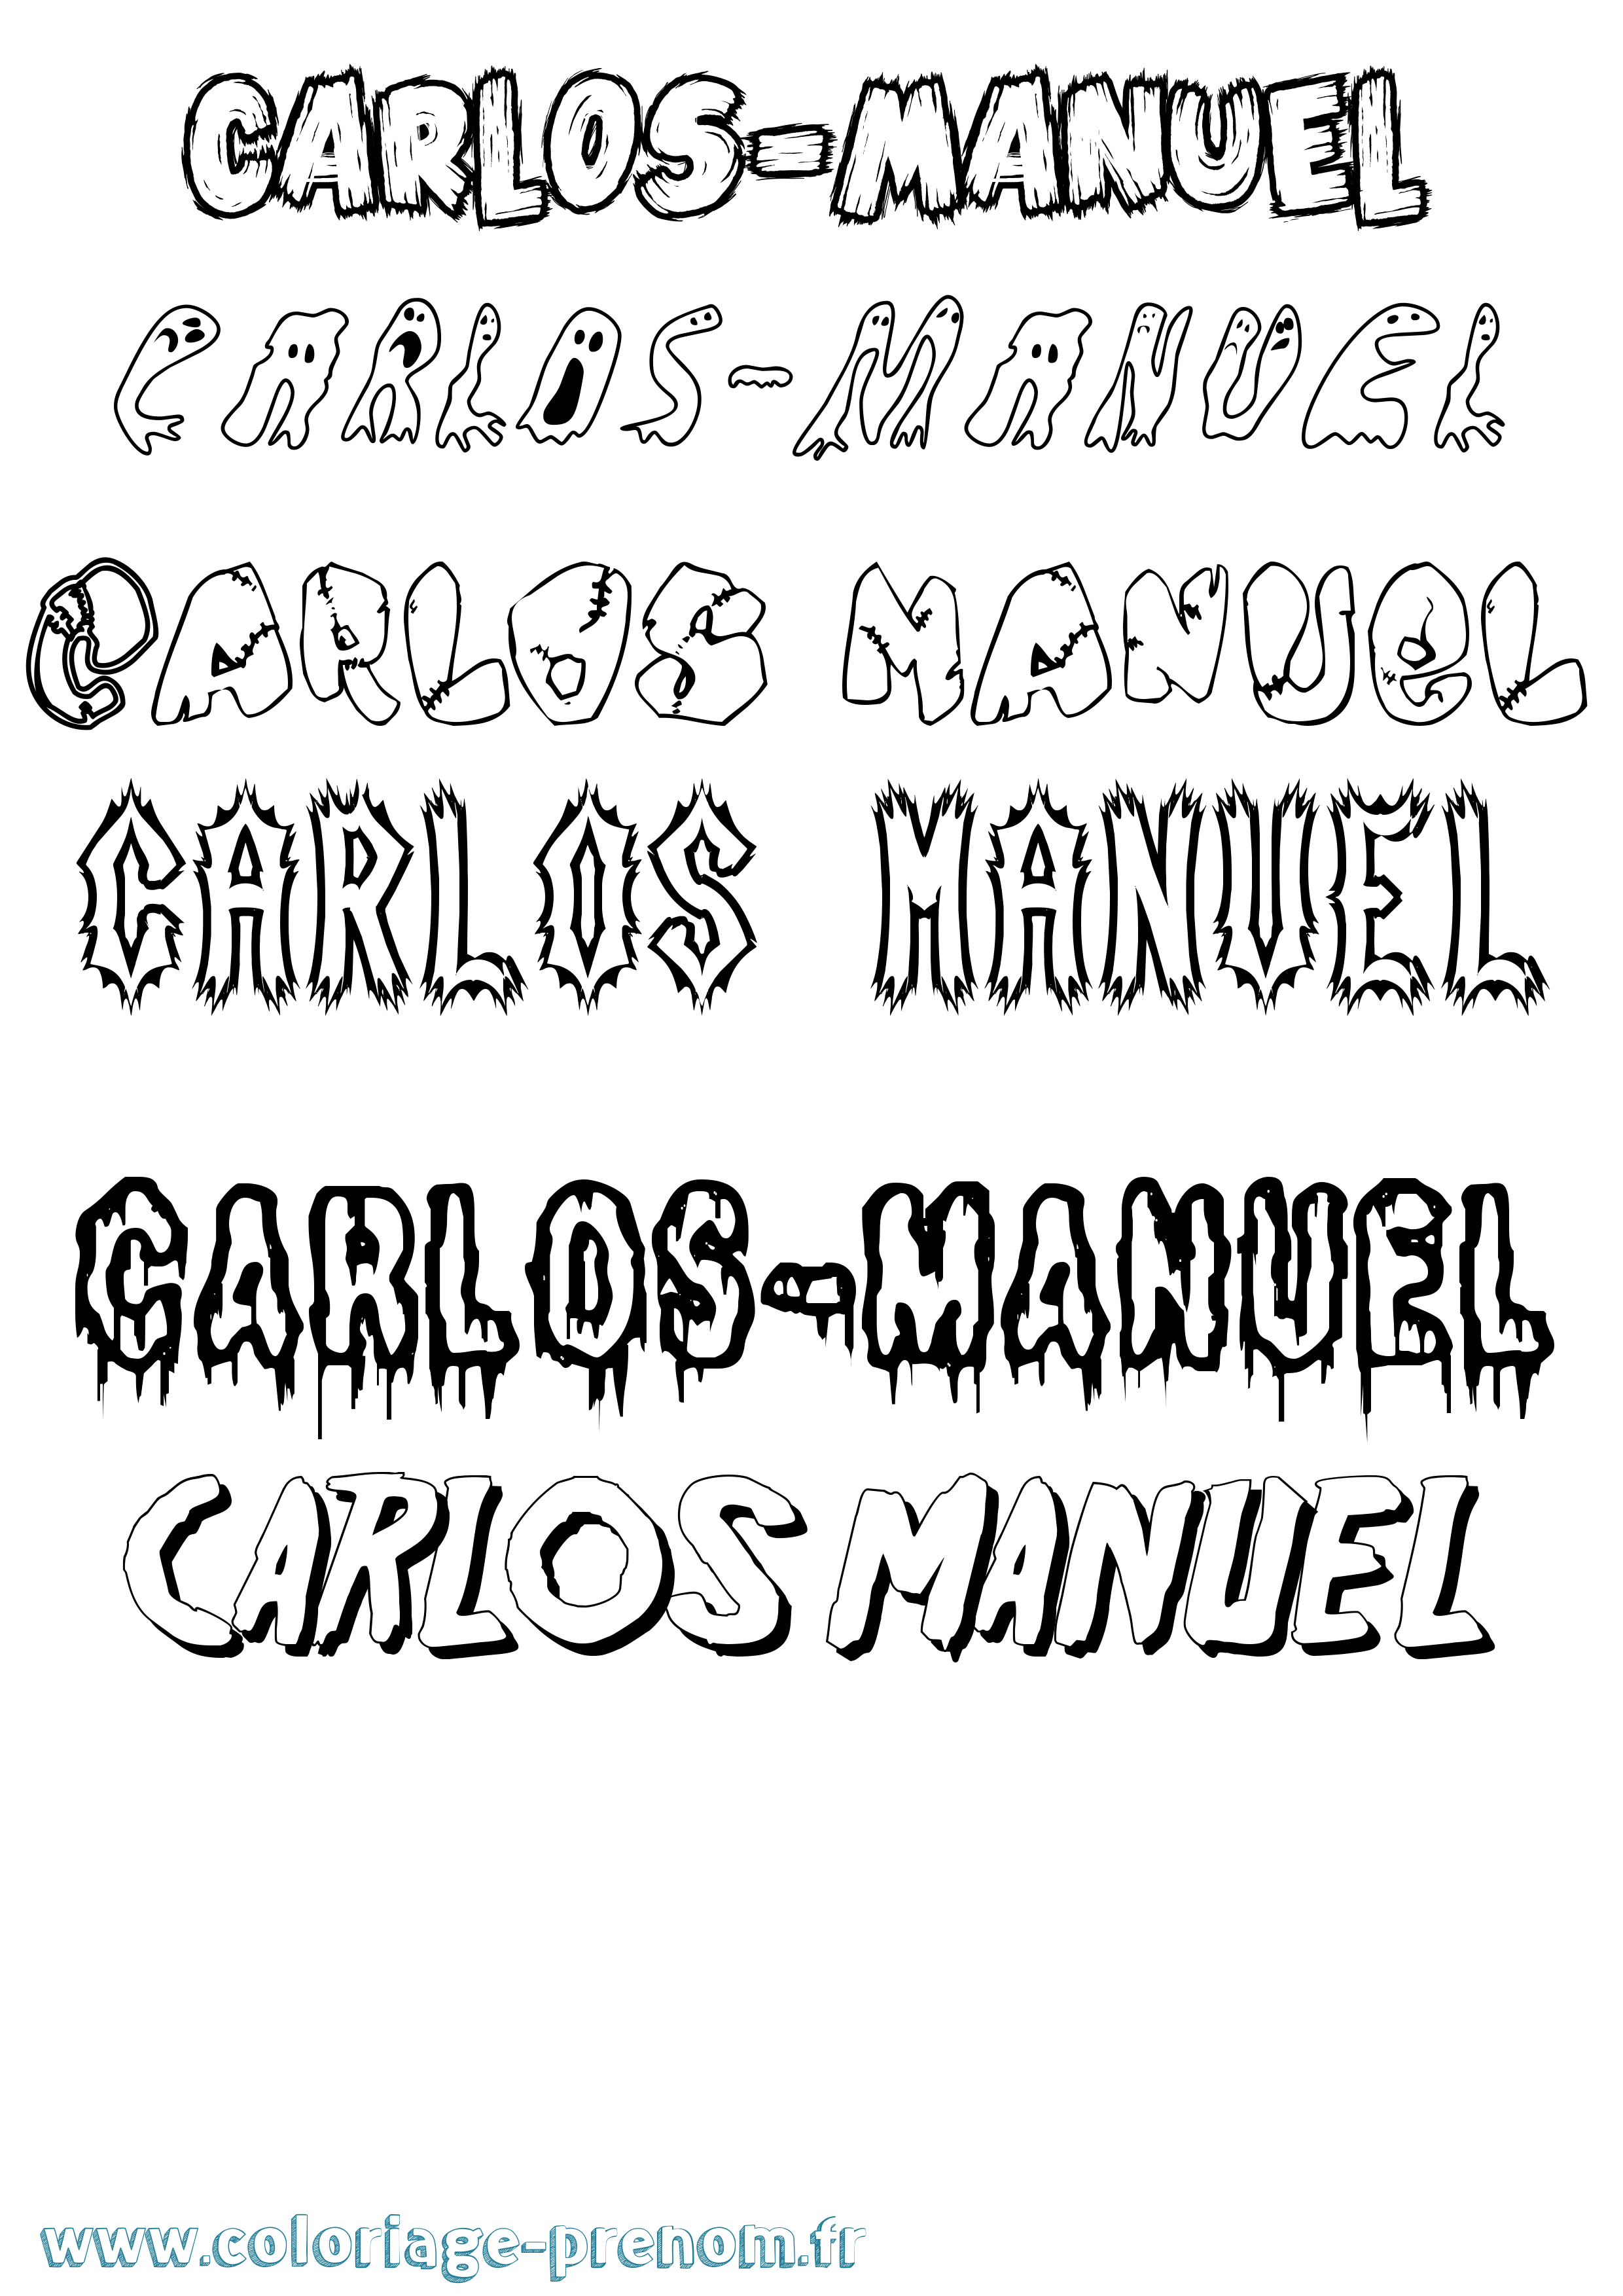 Coloriage prénom Carlos-Manuel Frisson